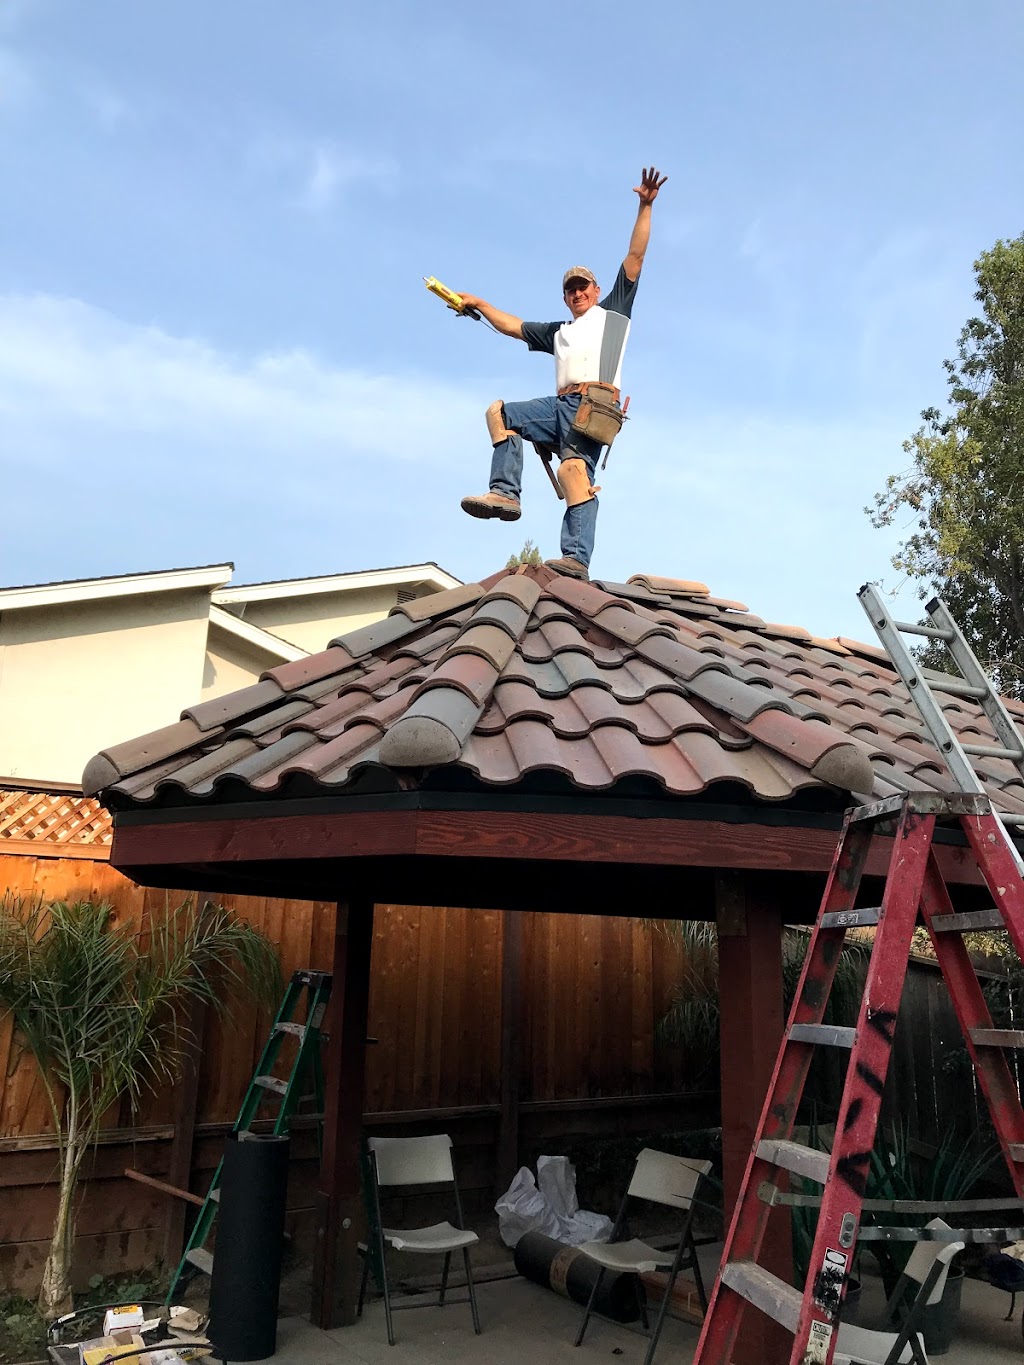 3K Roofing Inc | 125 Chateau La Salle Dr, San Jose, CA 95111 | Phone: (408) 796-2568